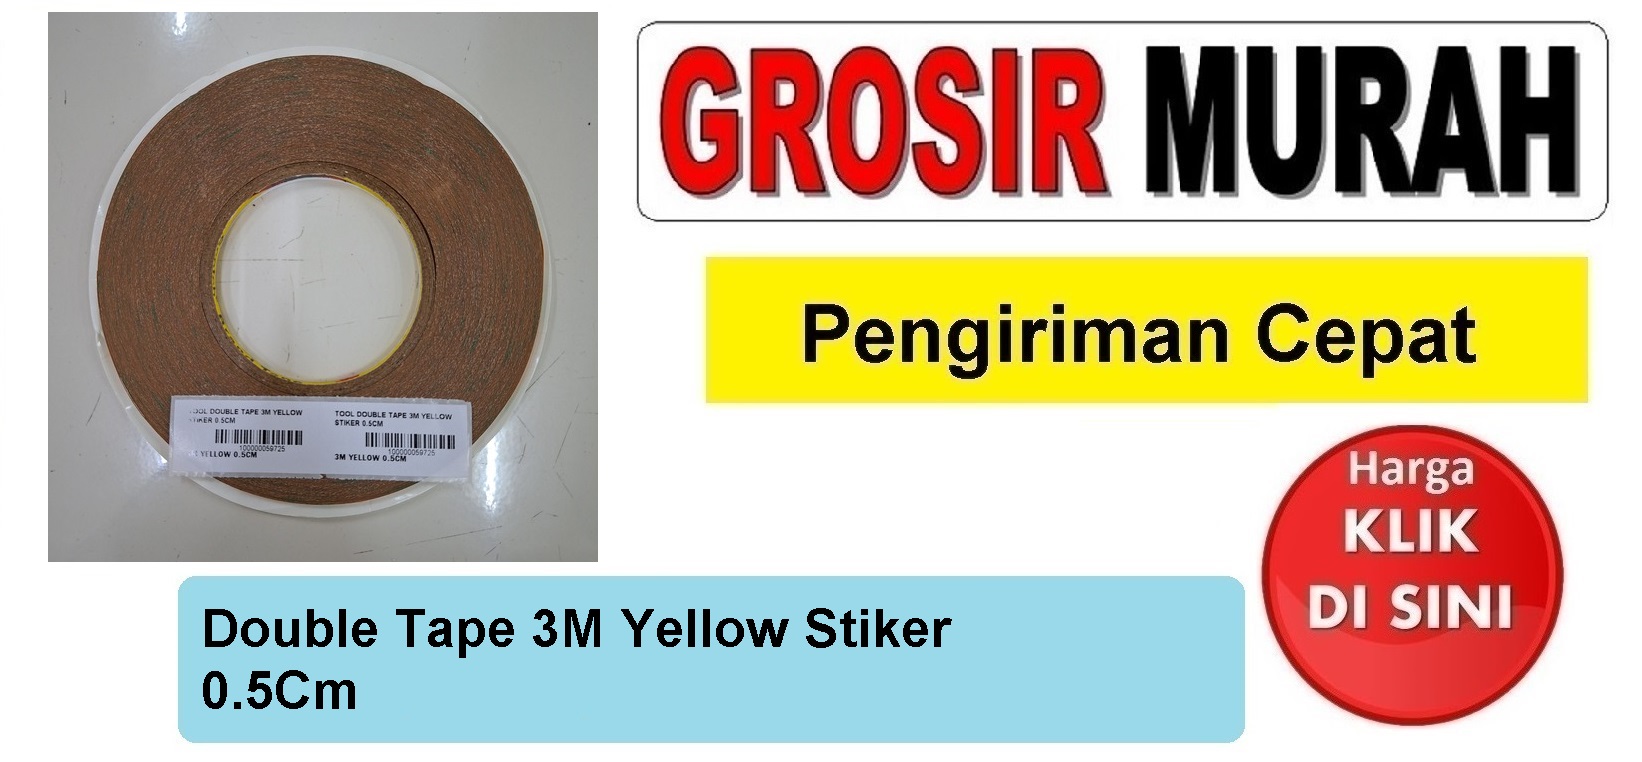 Double Tape 3M Yellow Stiker 0.5Cm Perlengkapan Service Toolkit Alat Serpis teknisi